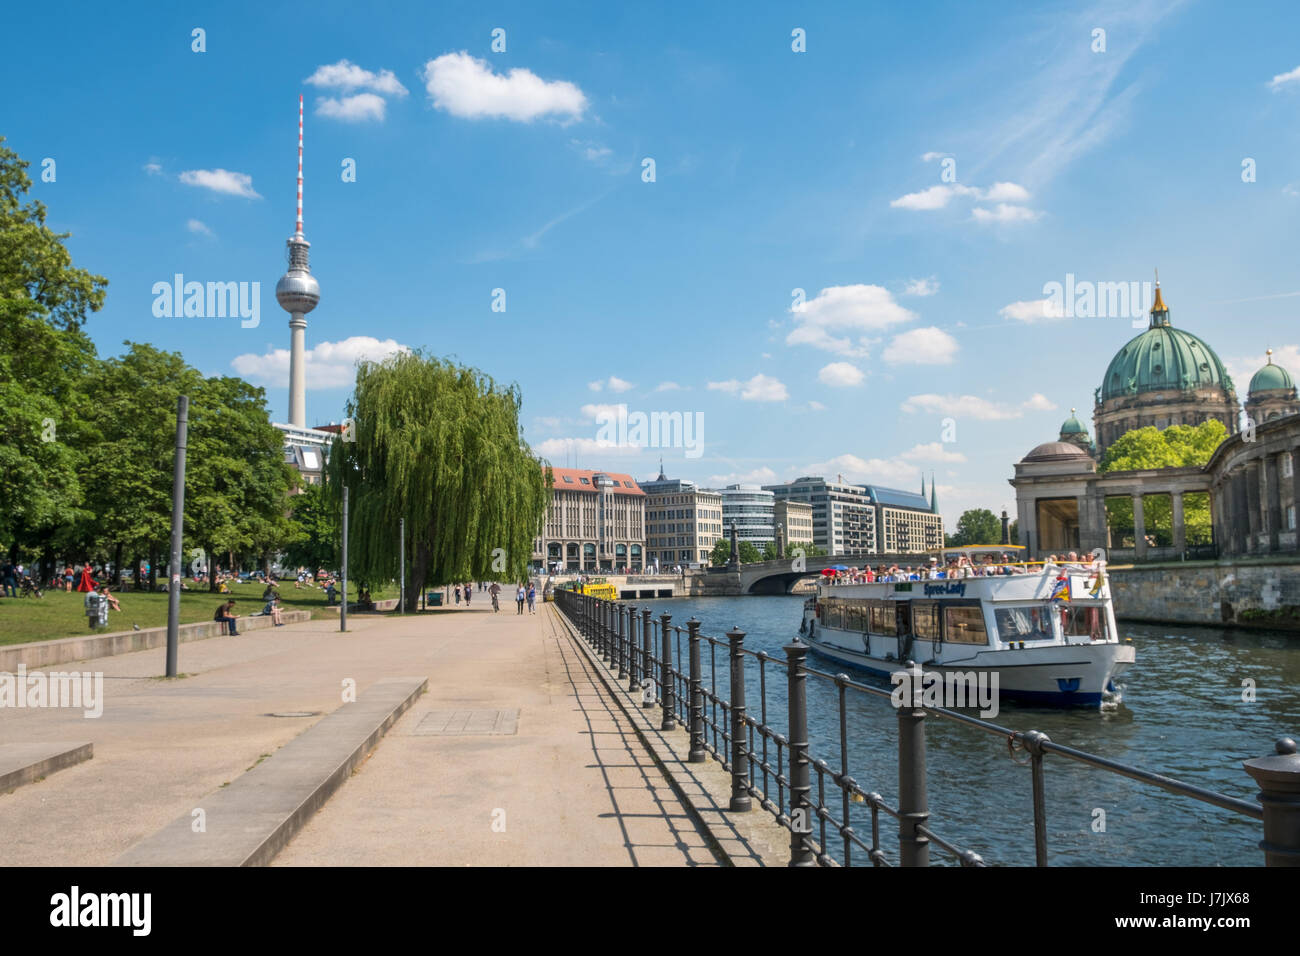 Berlin, Deutschland - 23. Mai 2017: Touristenboot auf der Spree am Monbijoupark mit Berliner Dom und Fernsehturm im Hintergrund. Stockfoto